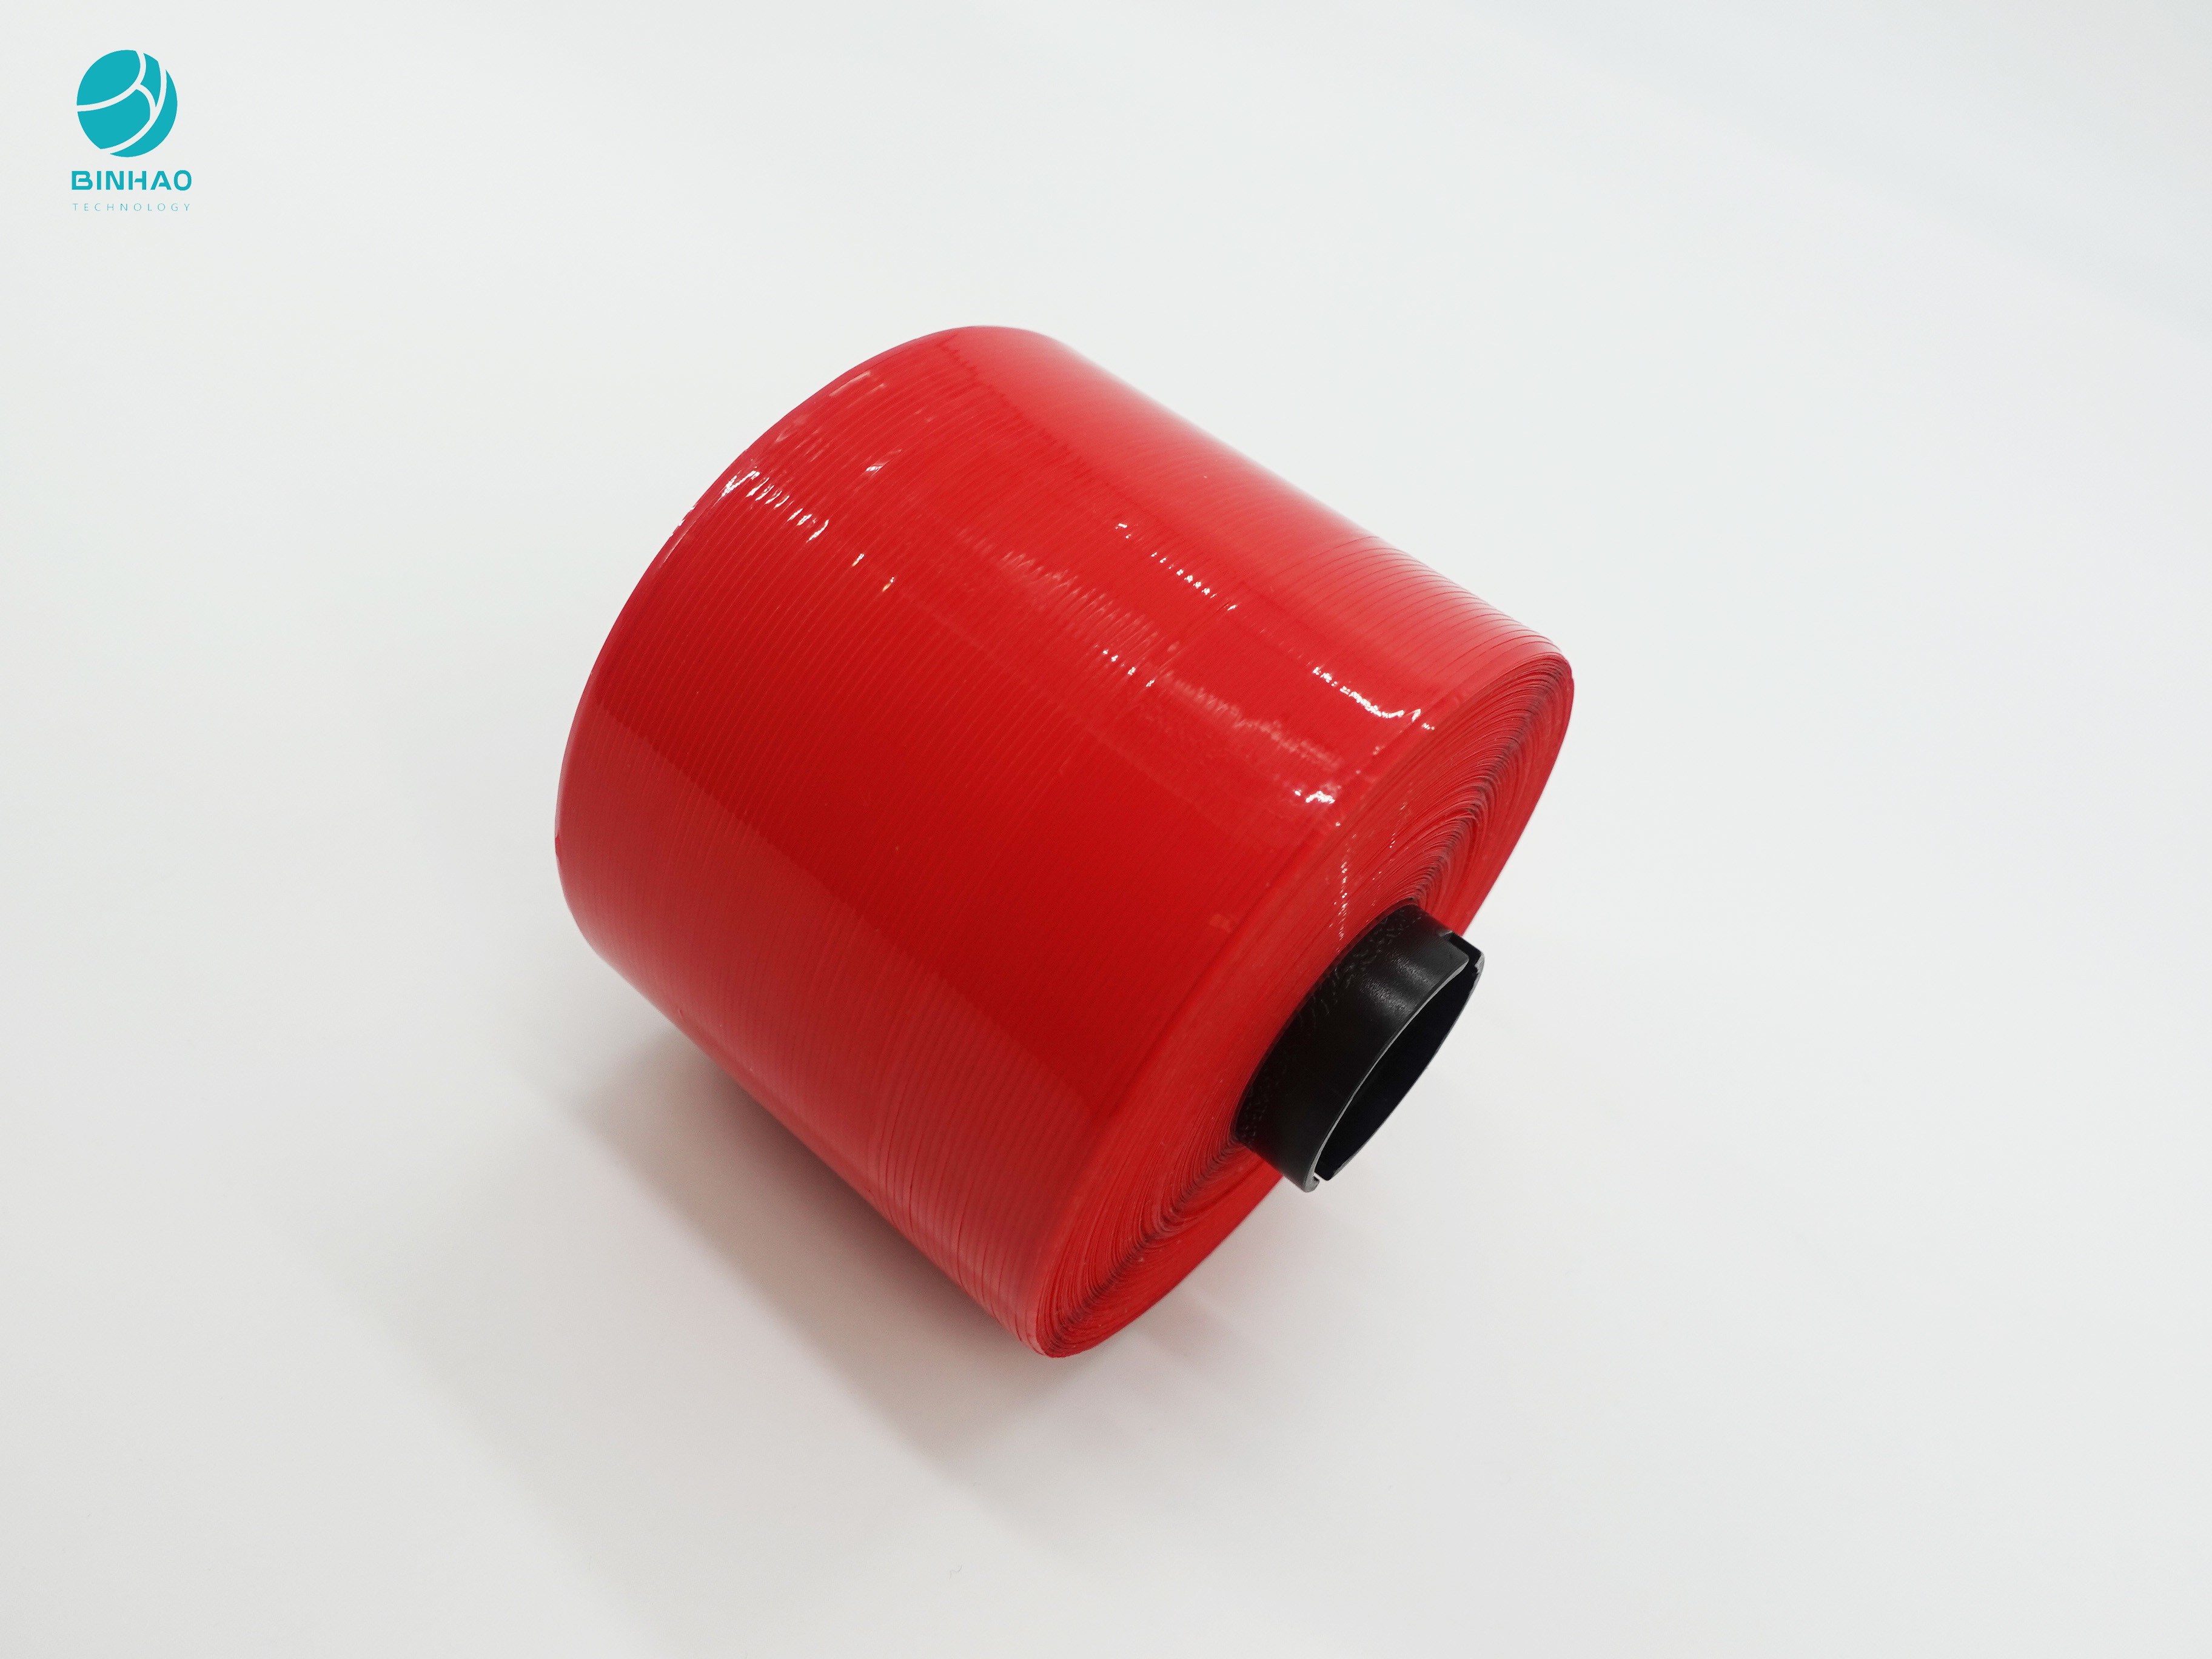 bande rouge lumineuse imperméable de bande de larme d'enveloppe de 1.5-5mm BOPP pour le paquet